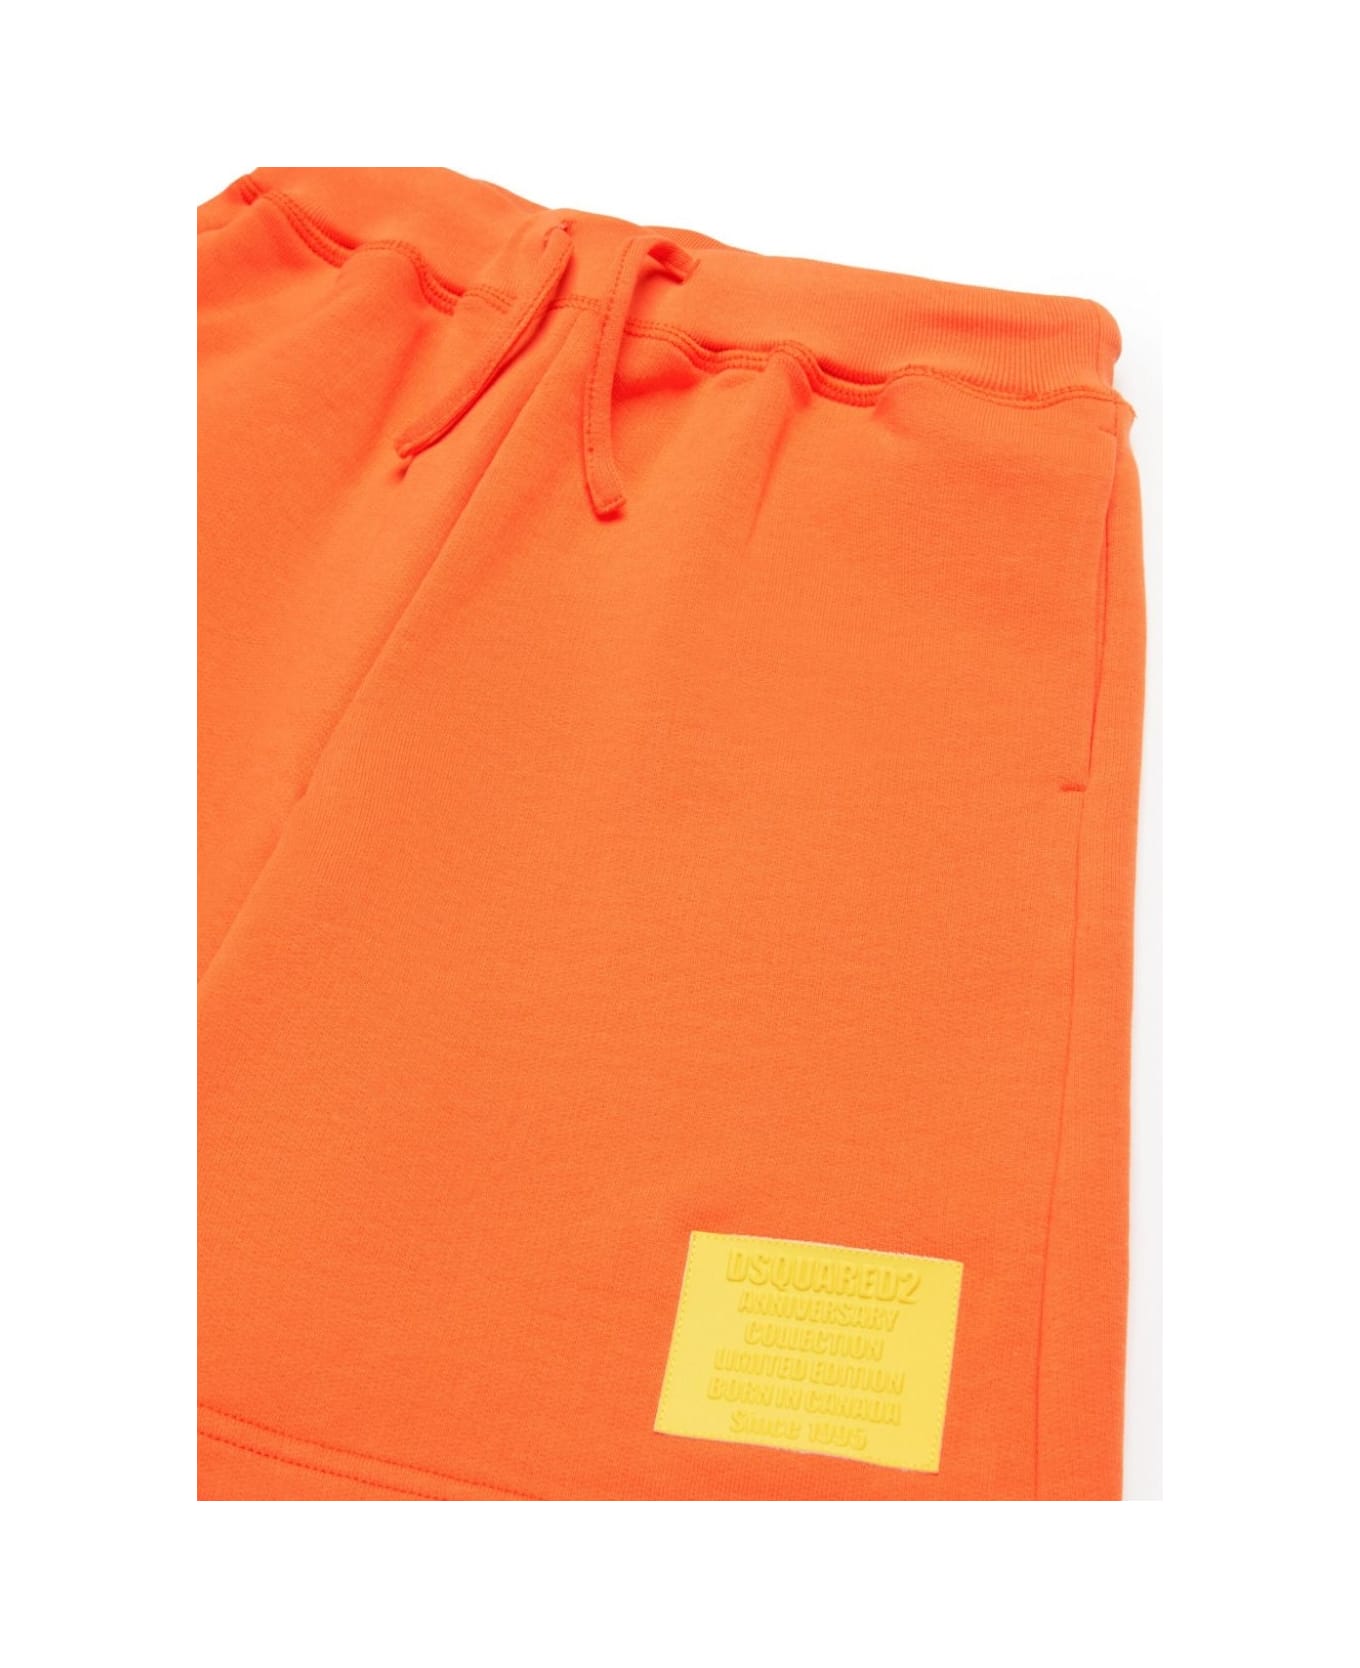 Dsquared2 Shorts Con Applicazione - Orange